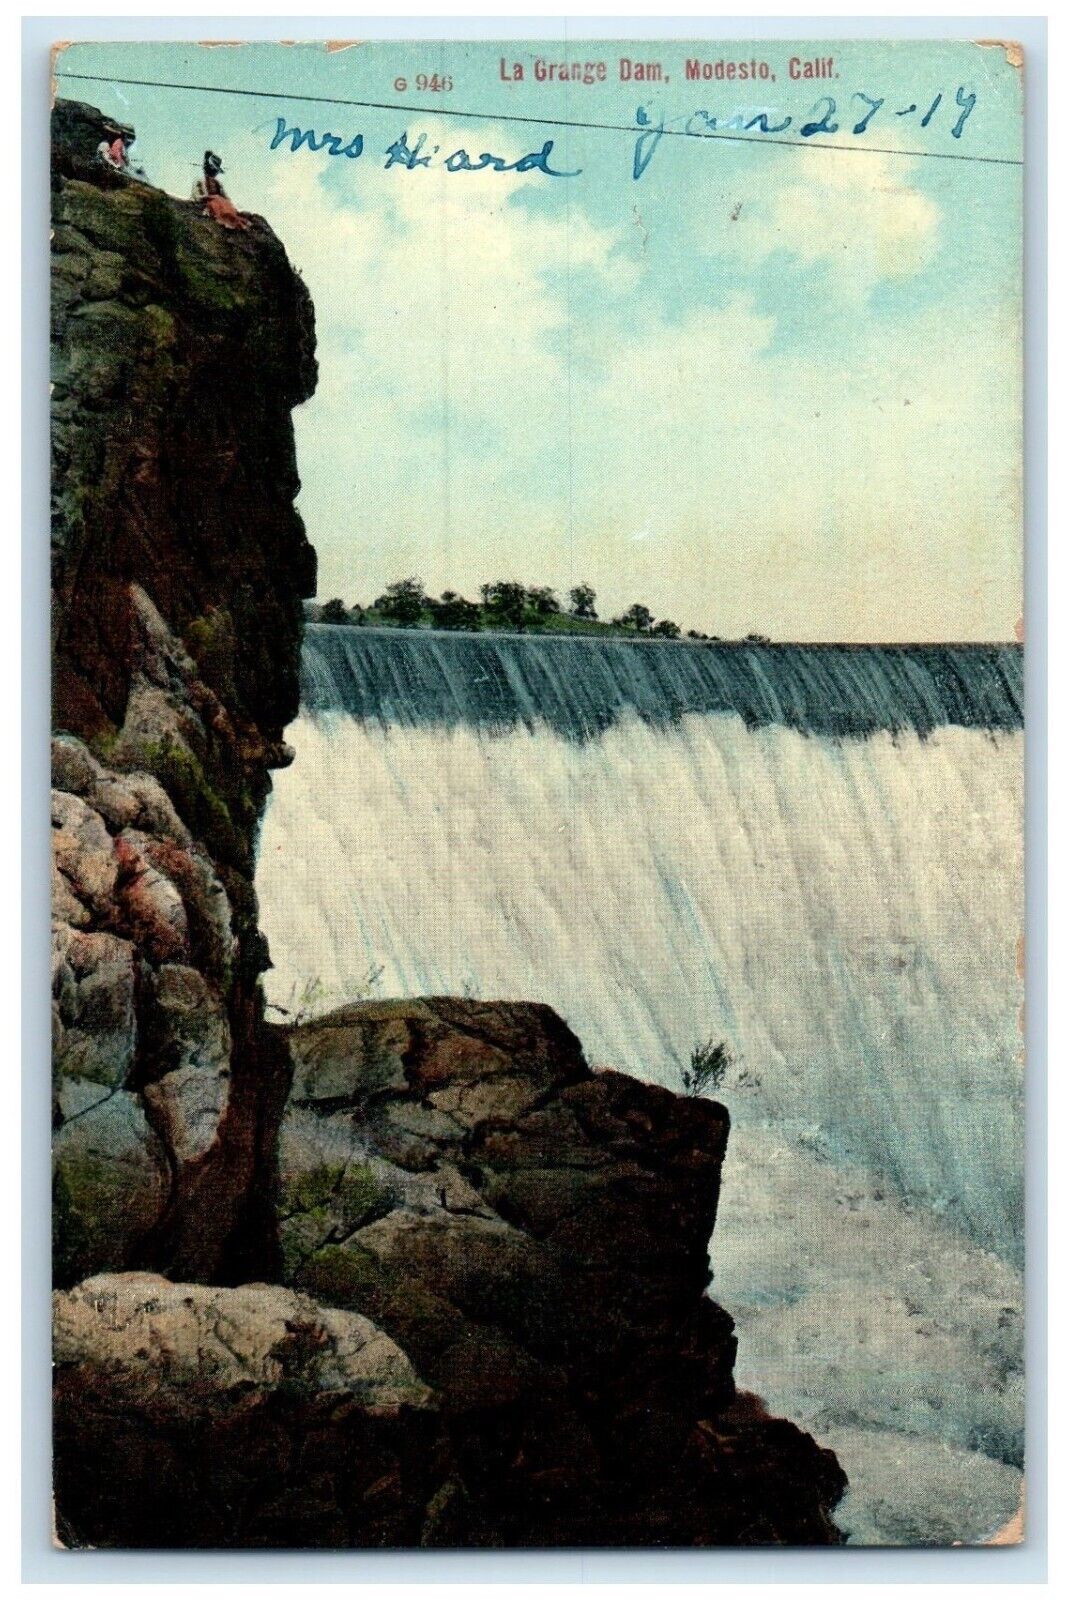 1919 Scenic View La Grange Dam Modesto California CA Vintage Antique Postcard